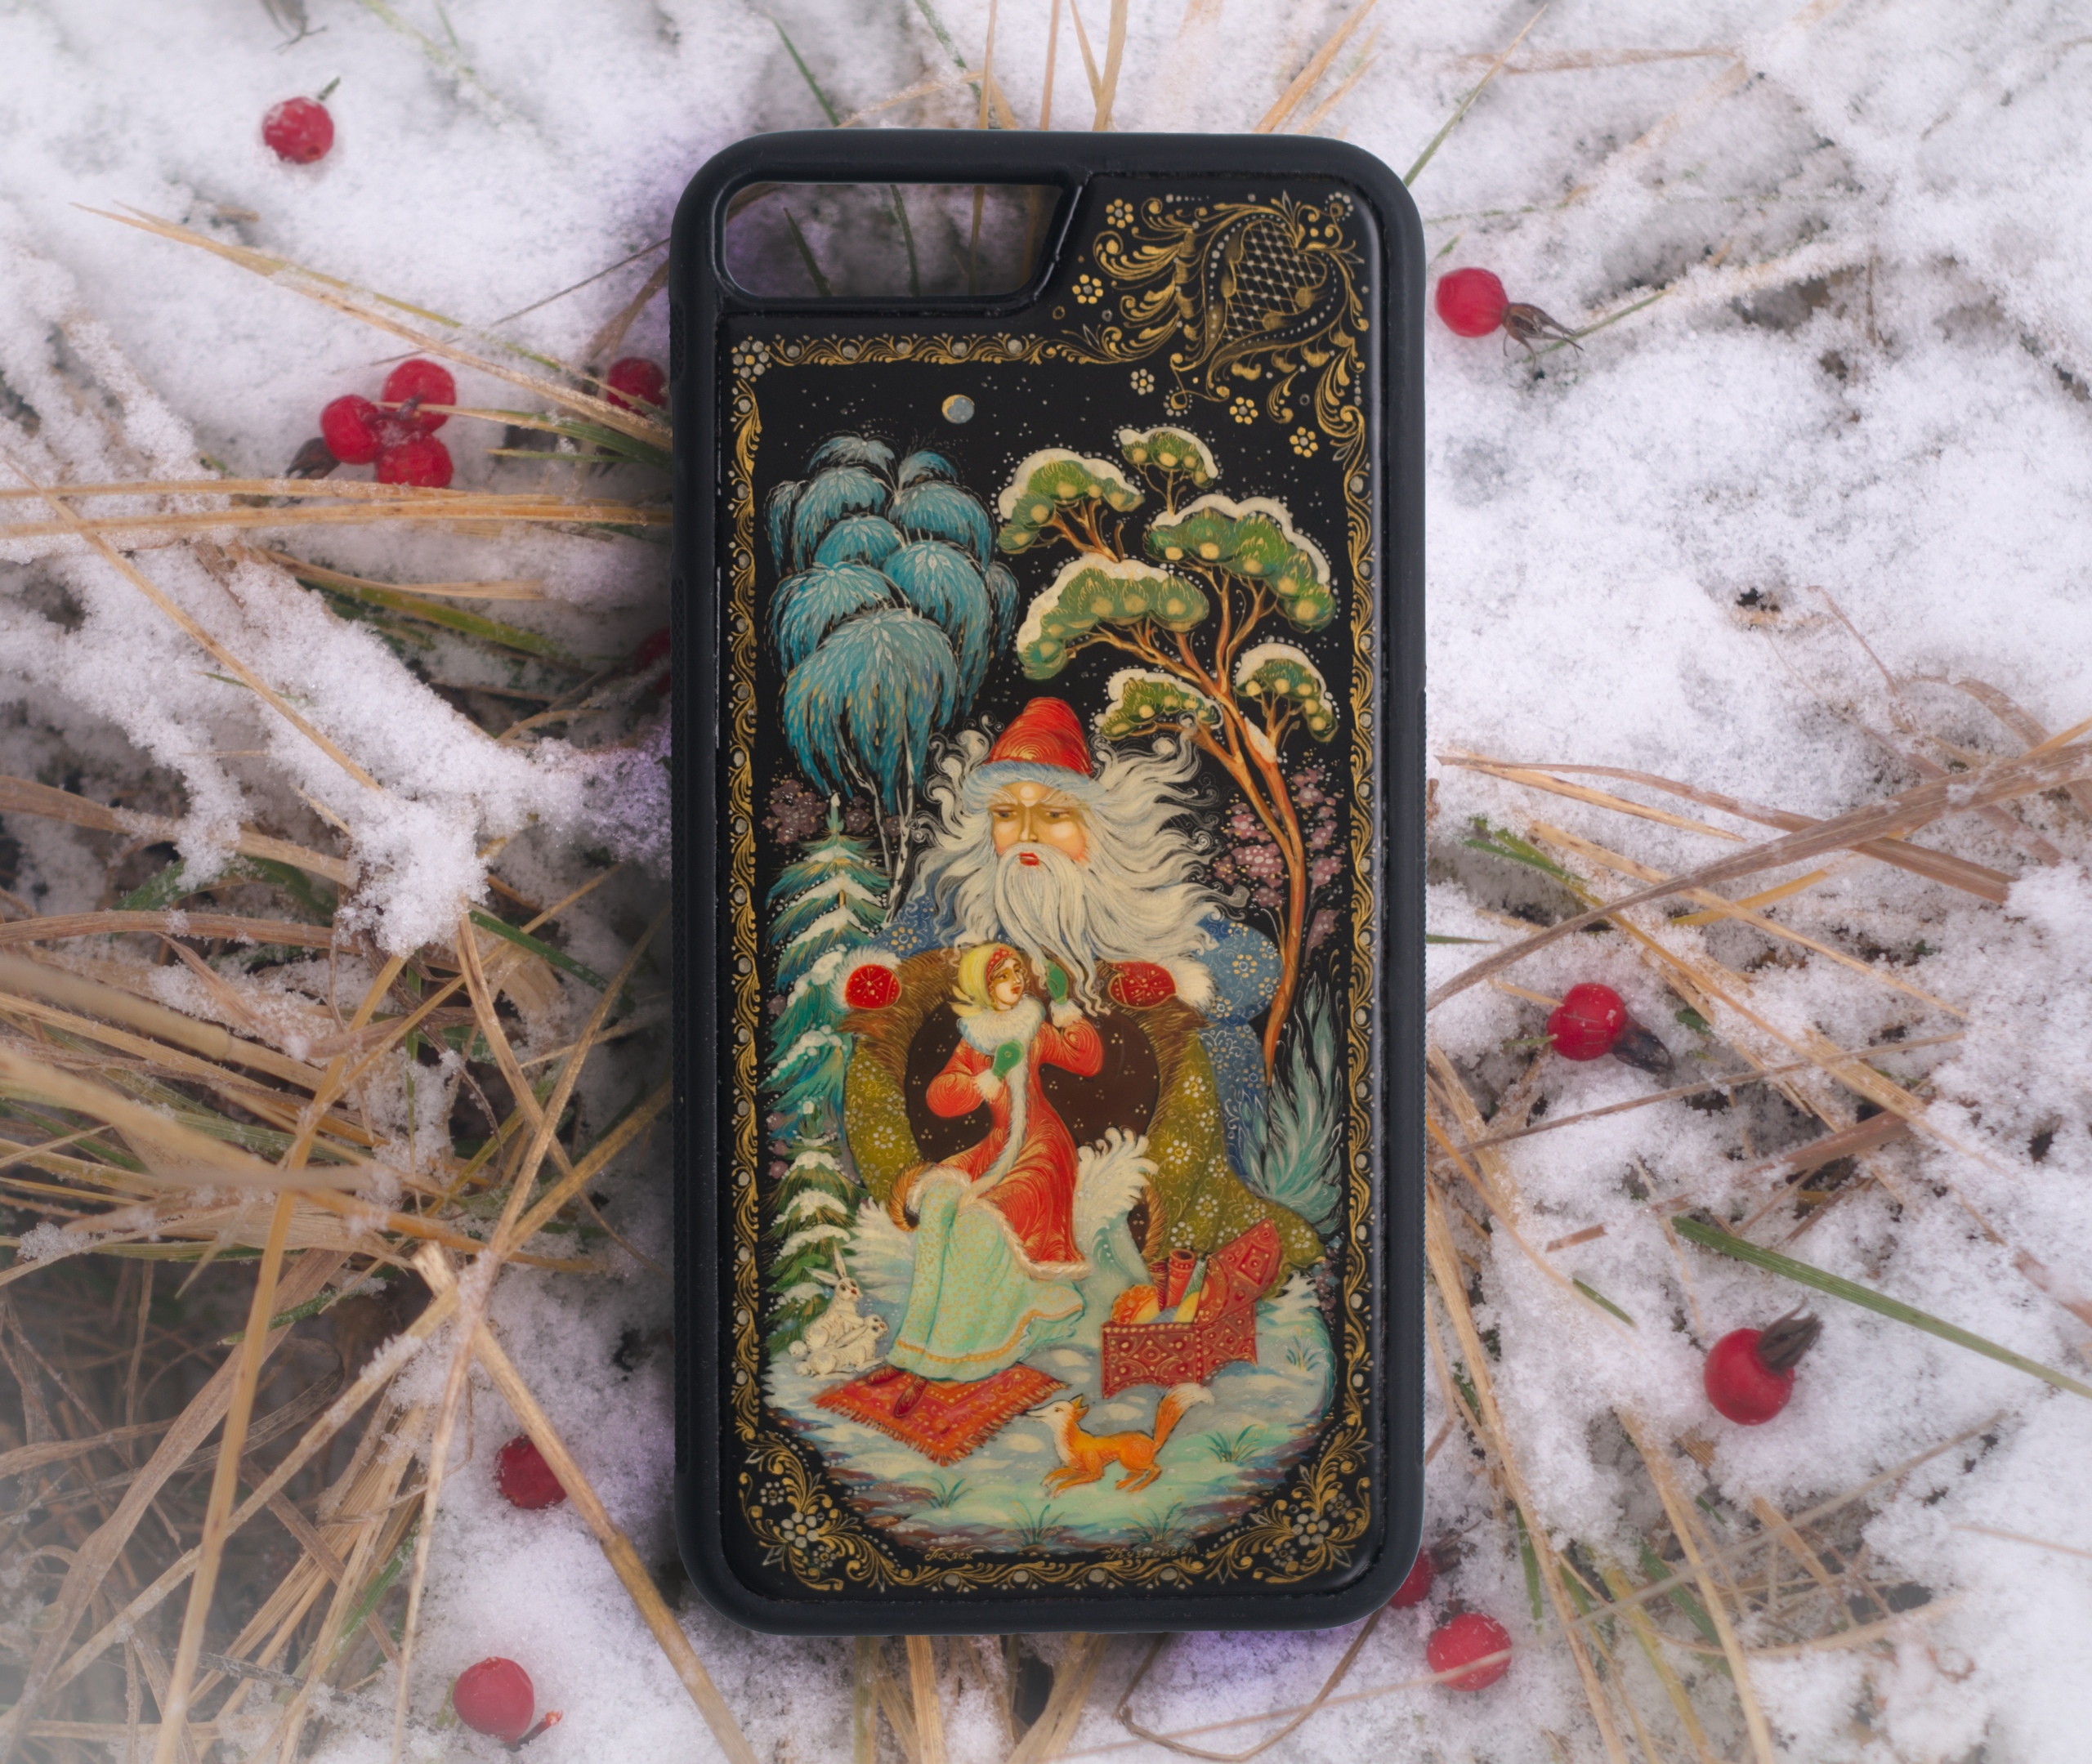 Дед Мороз и Снегурочка в палехском стиле попали на чехлы для телефонов (ФОТО)